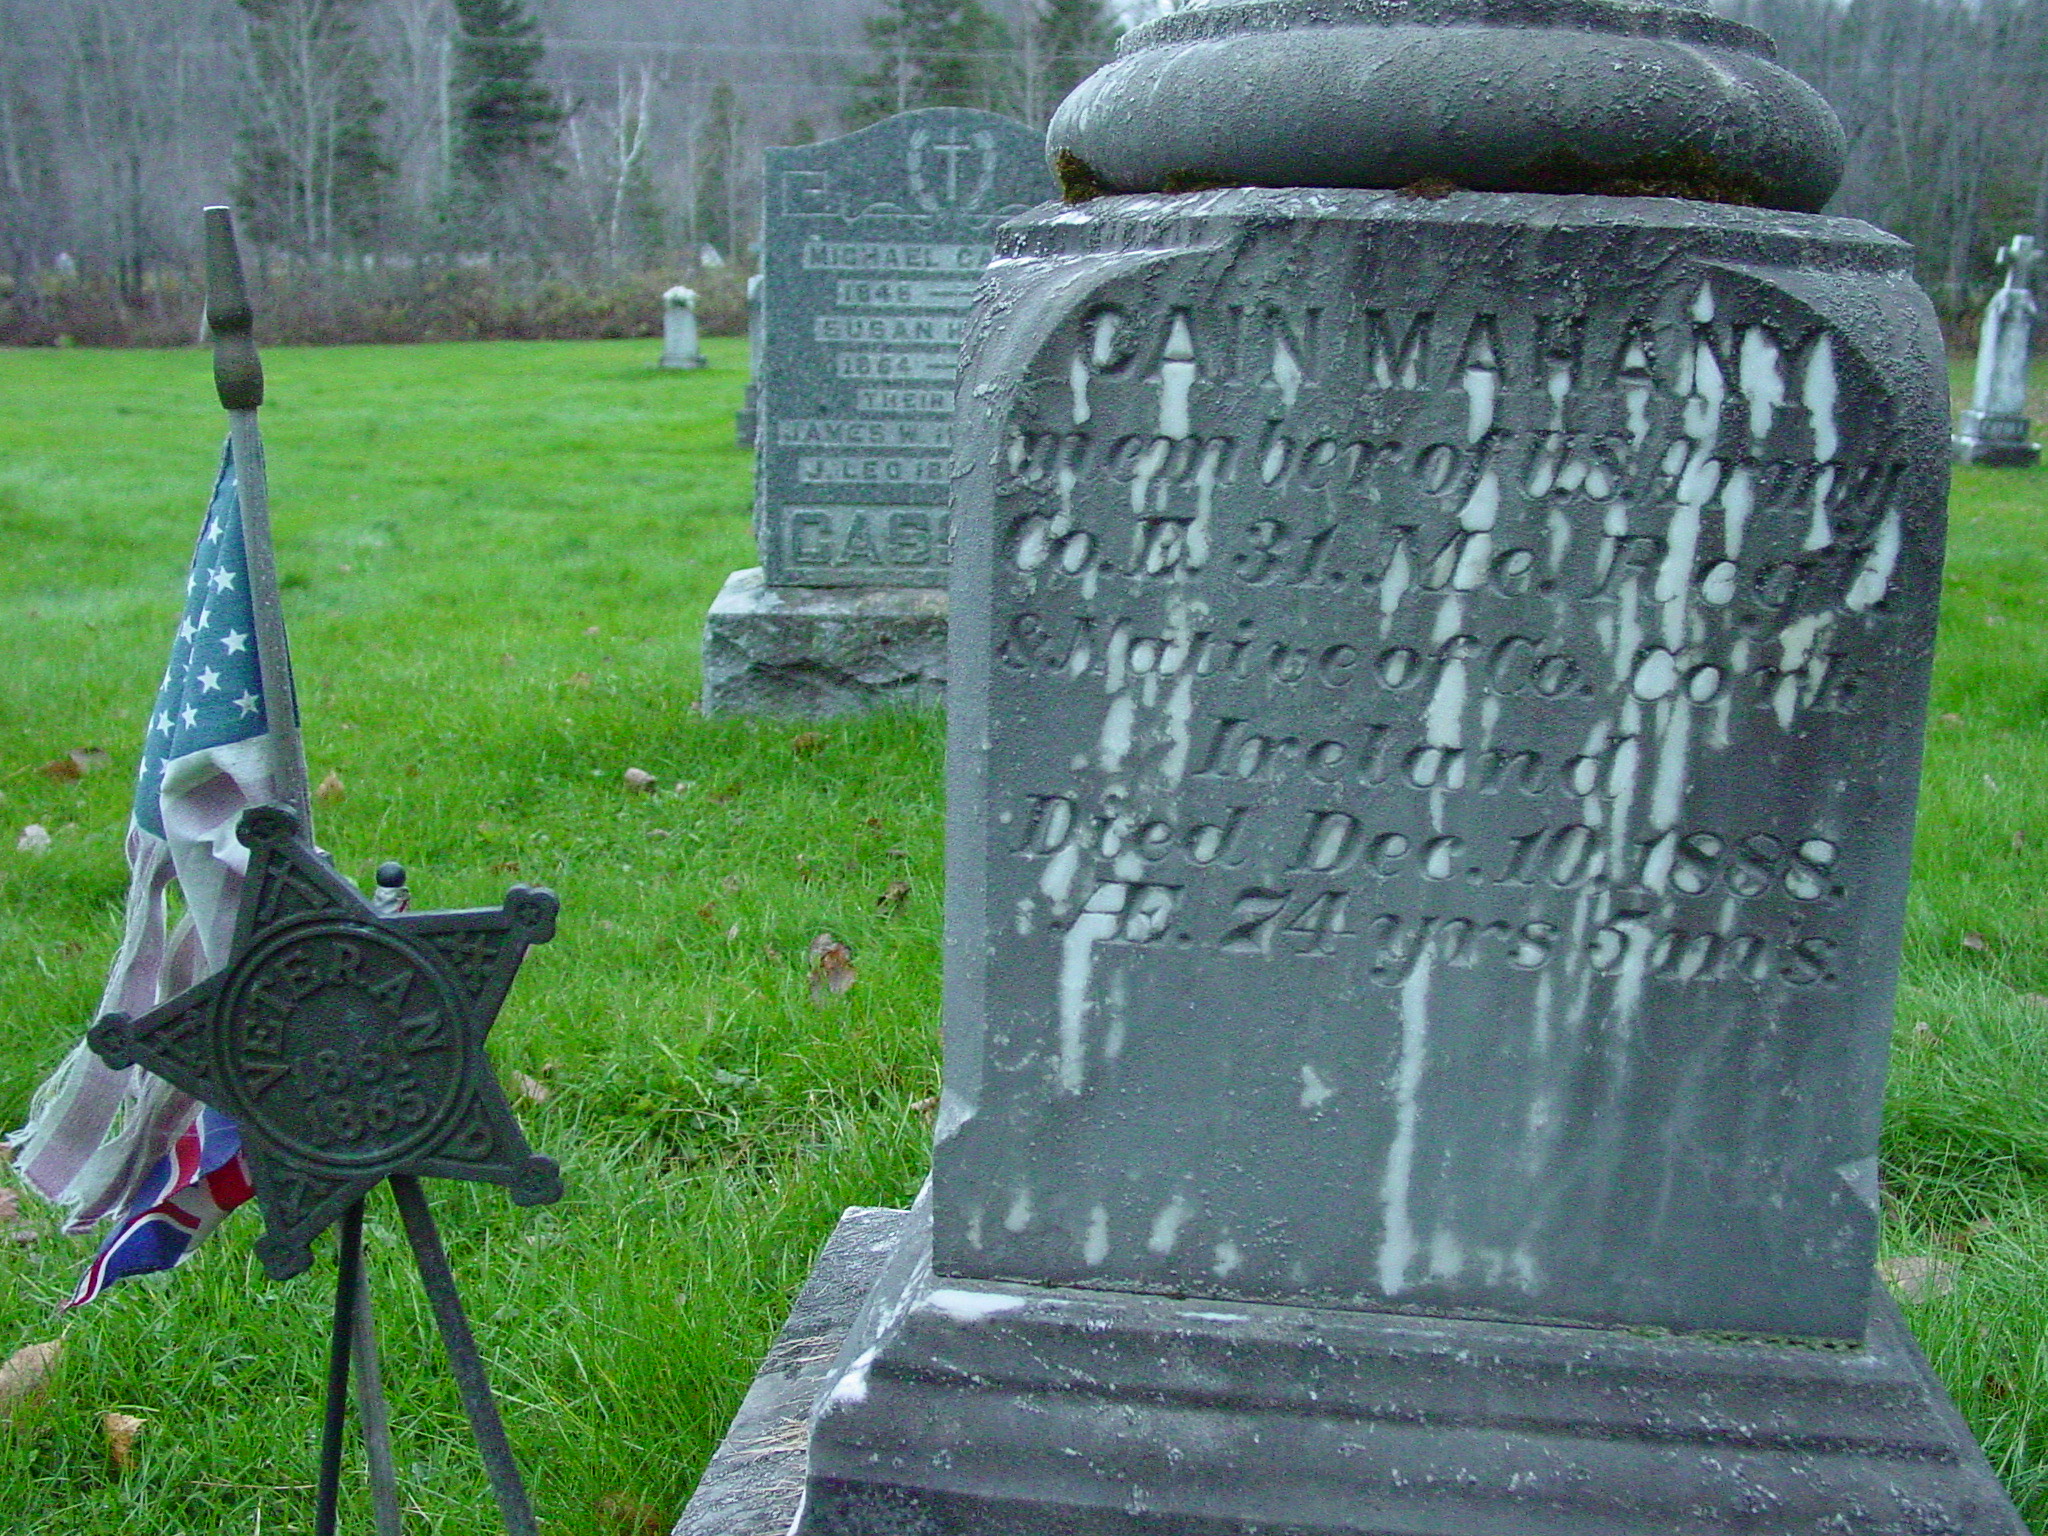 Photograph of Cain Mahany's gravestone